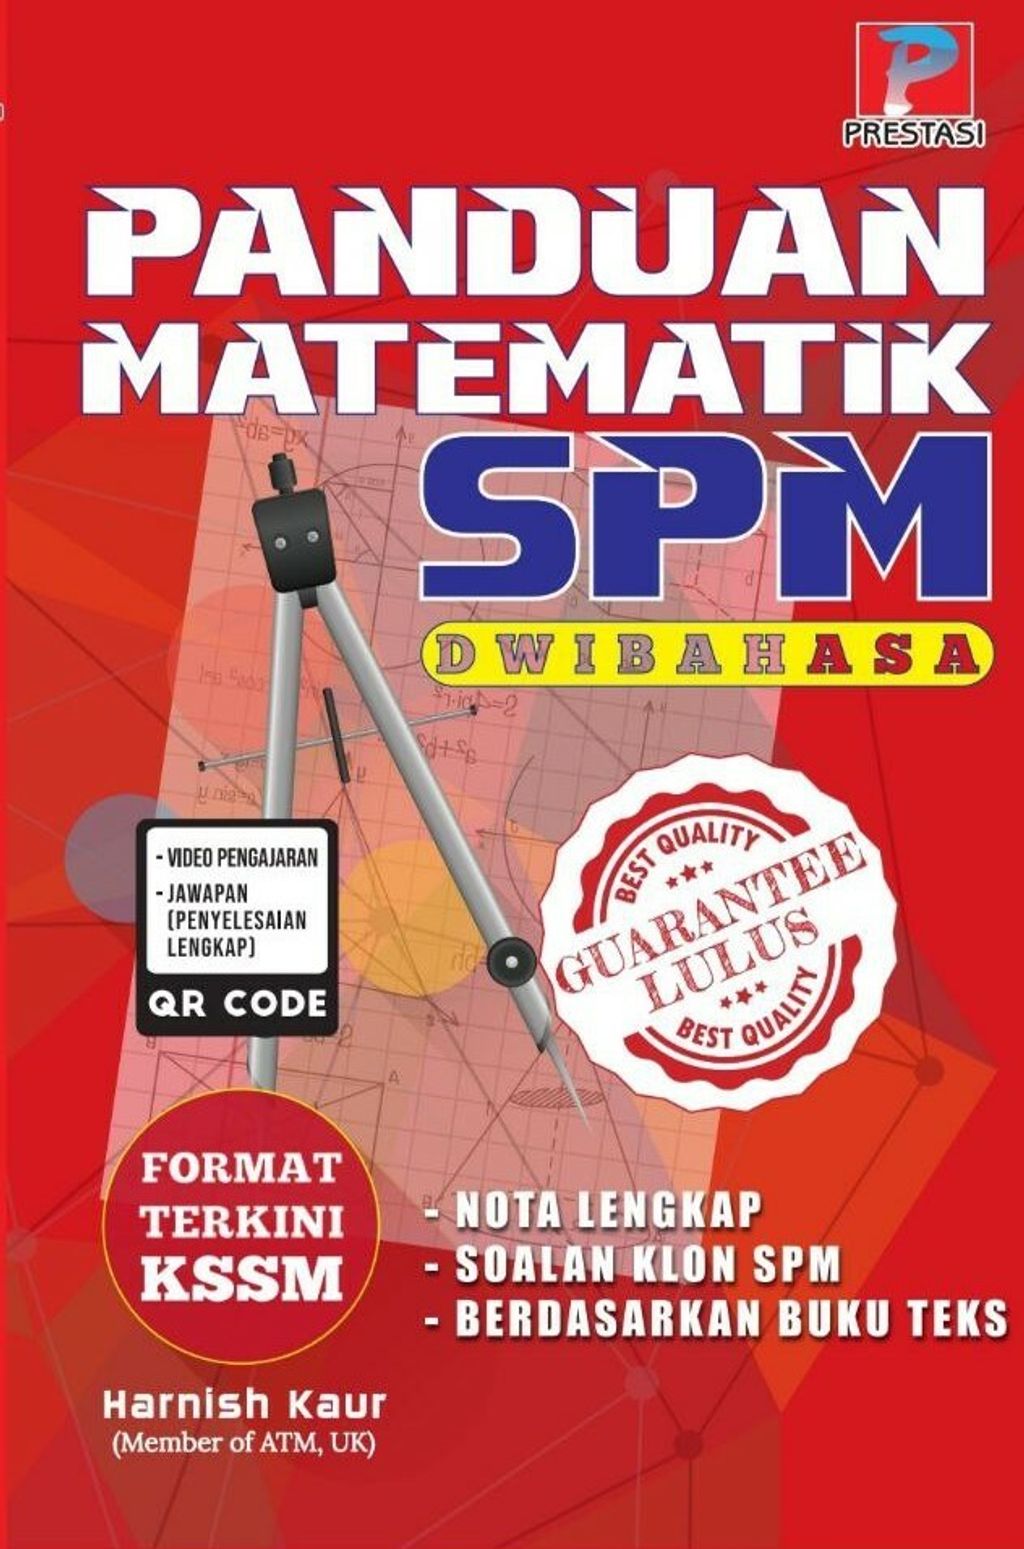 Panduan Matematik SPM front cover.jpg